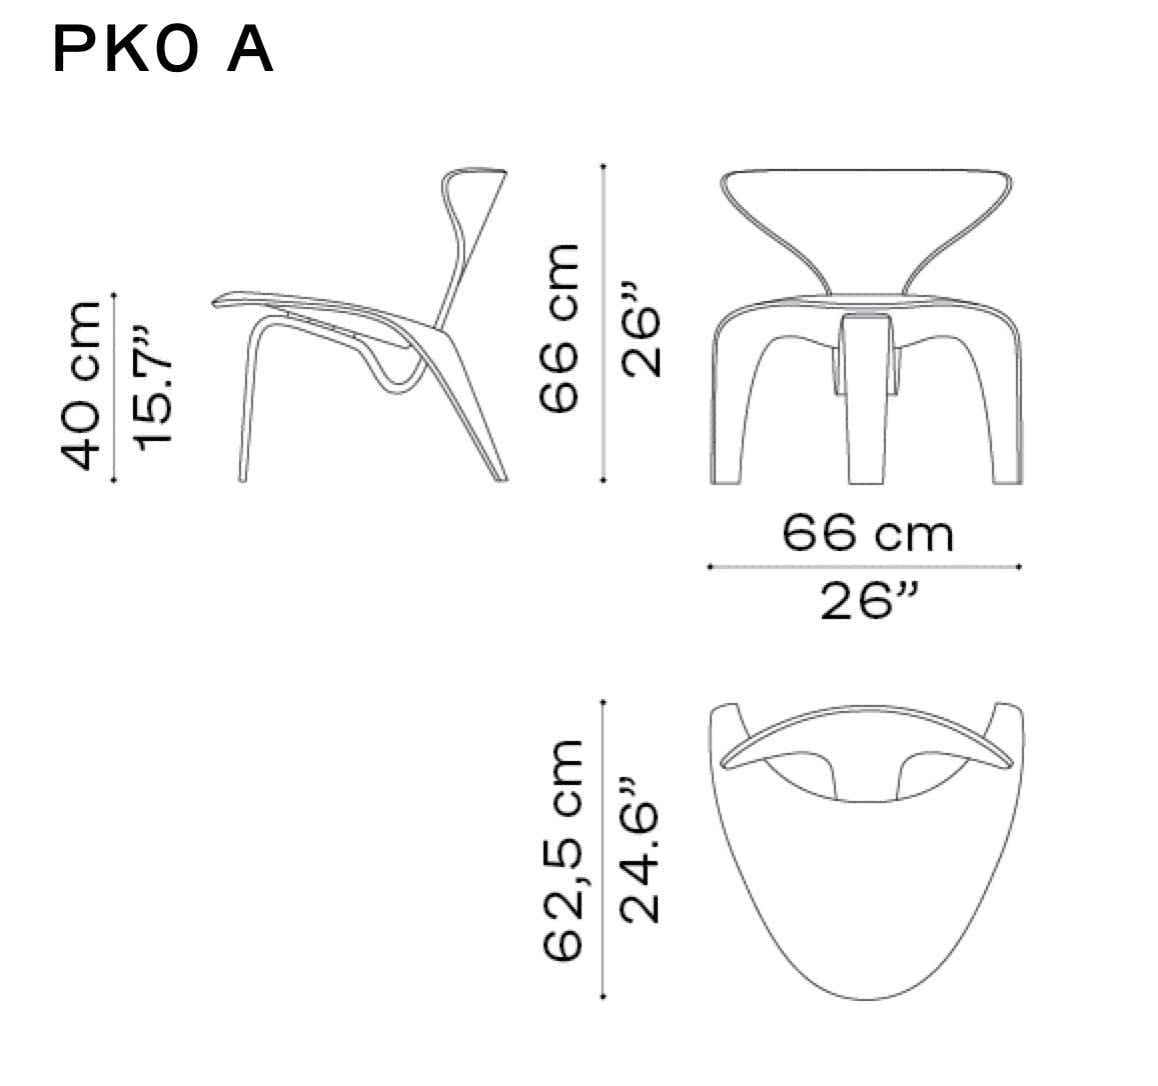 PK0A chair & PK60 table Fritz Hansen – Poul Kjærholm, 1952 